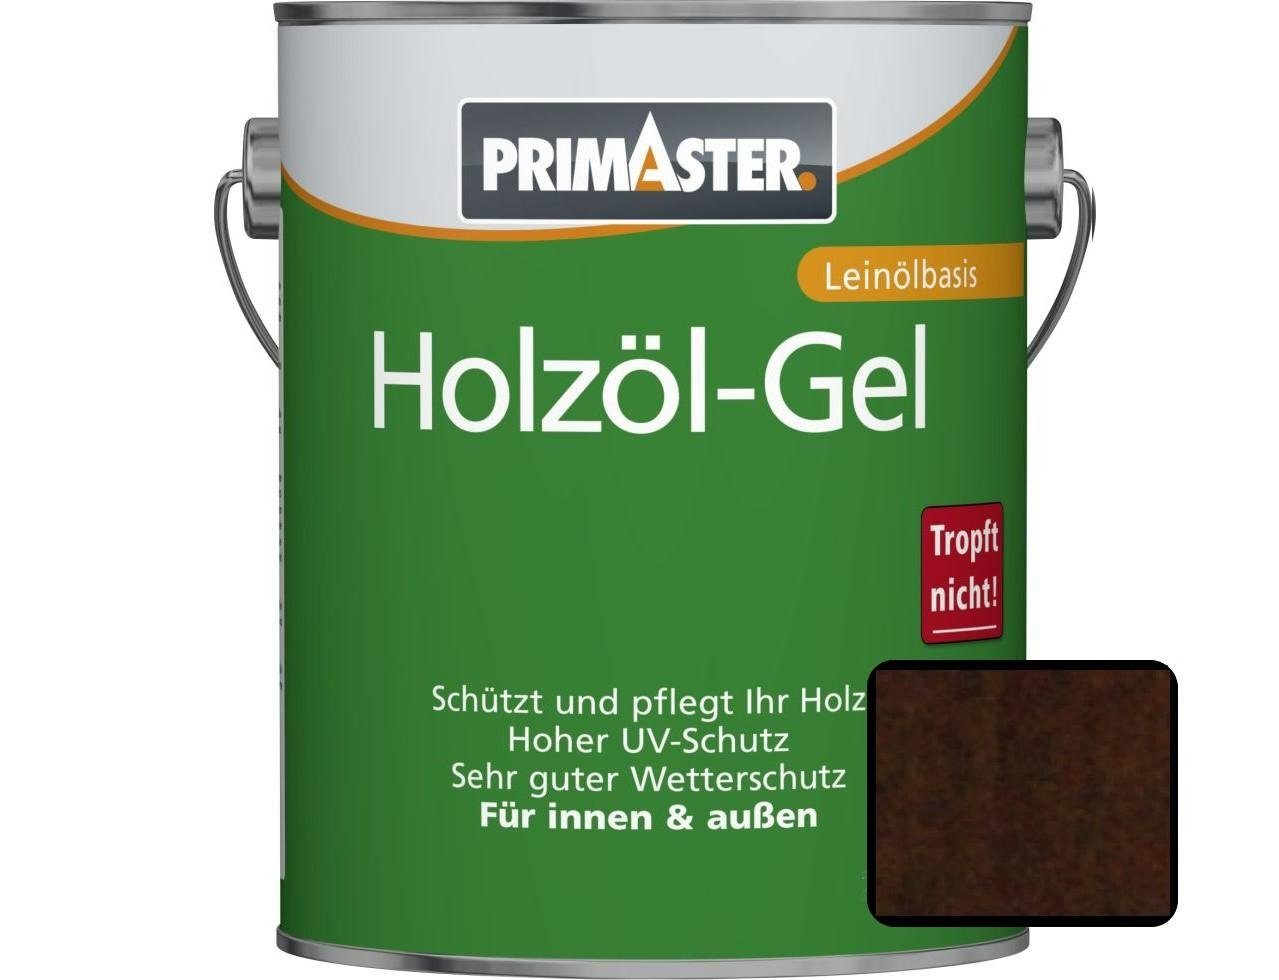 Primaster Hartholzöl Primaster Holzöl-Gel 750 ml nussbaum